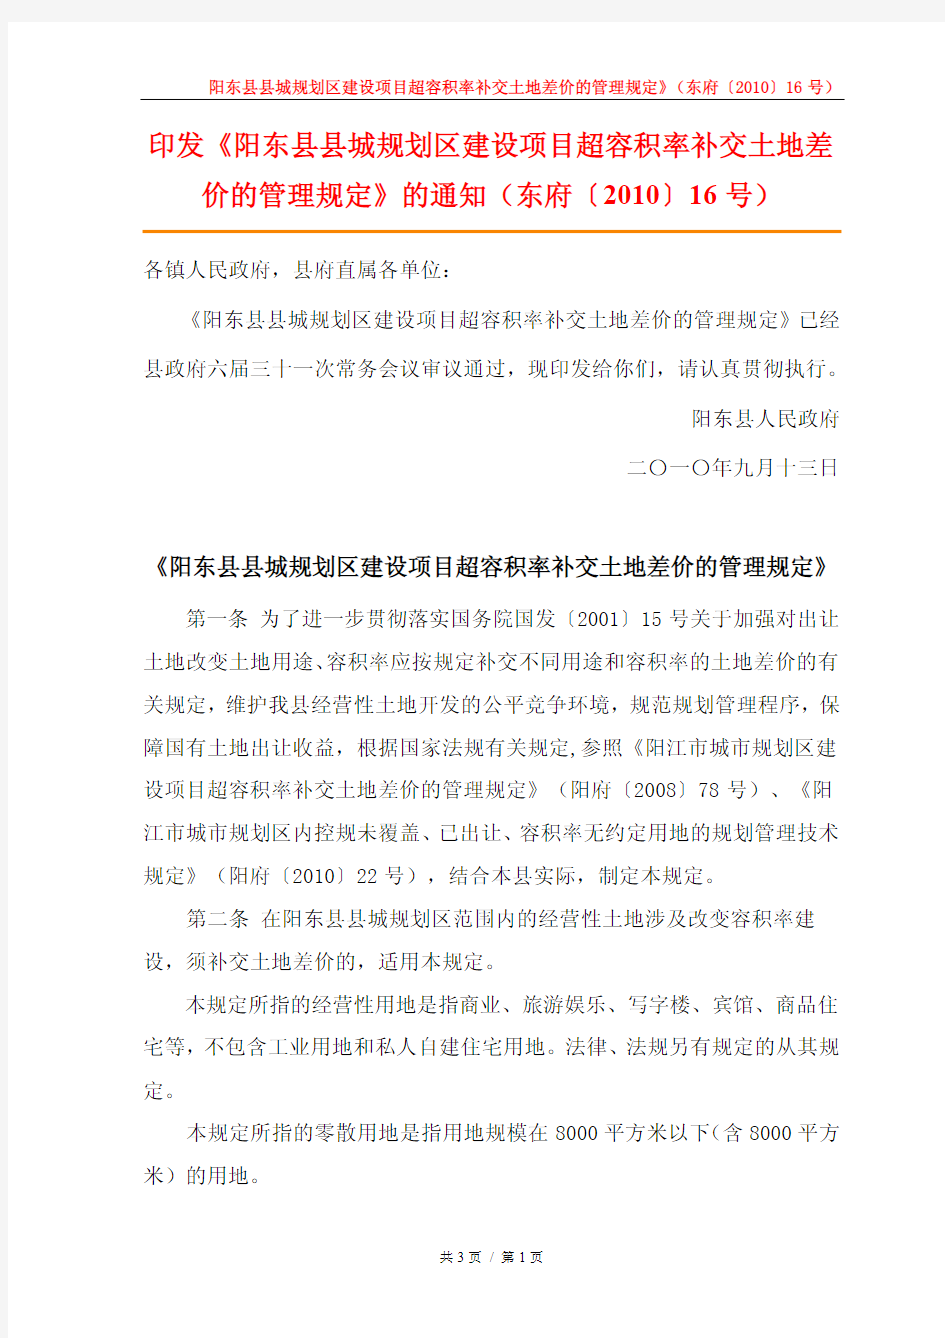 阳东县县城规划区建设项目超容积率补交土地差价的管理规定》(东府〔2010〕16号)